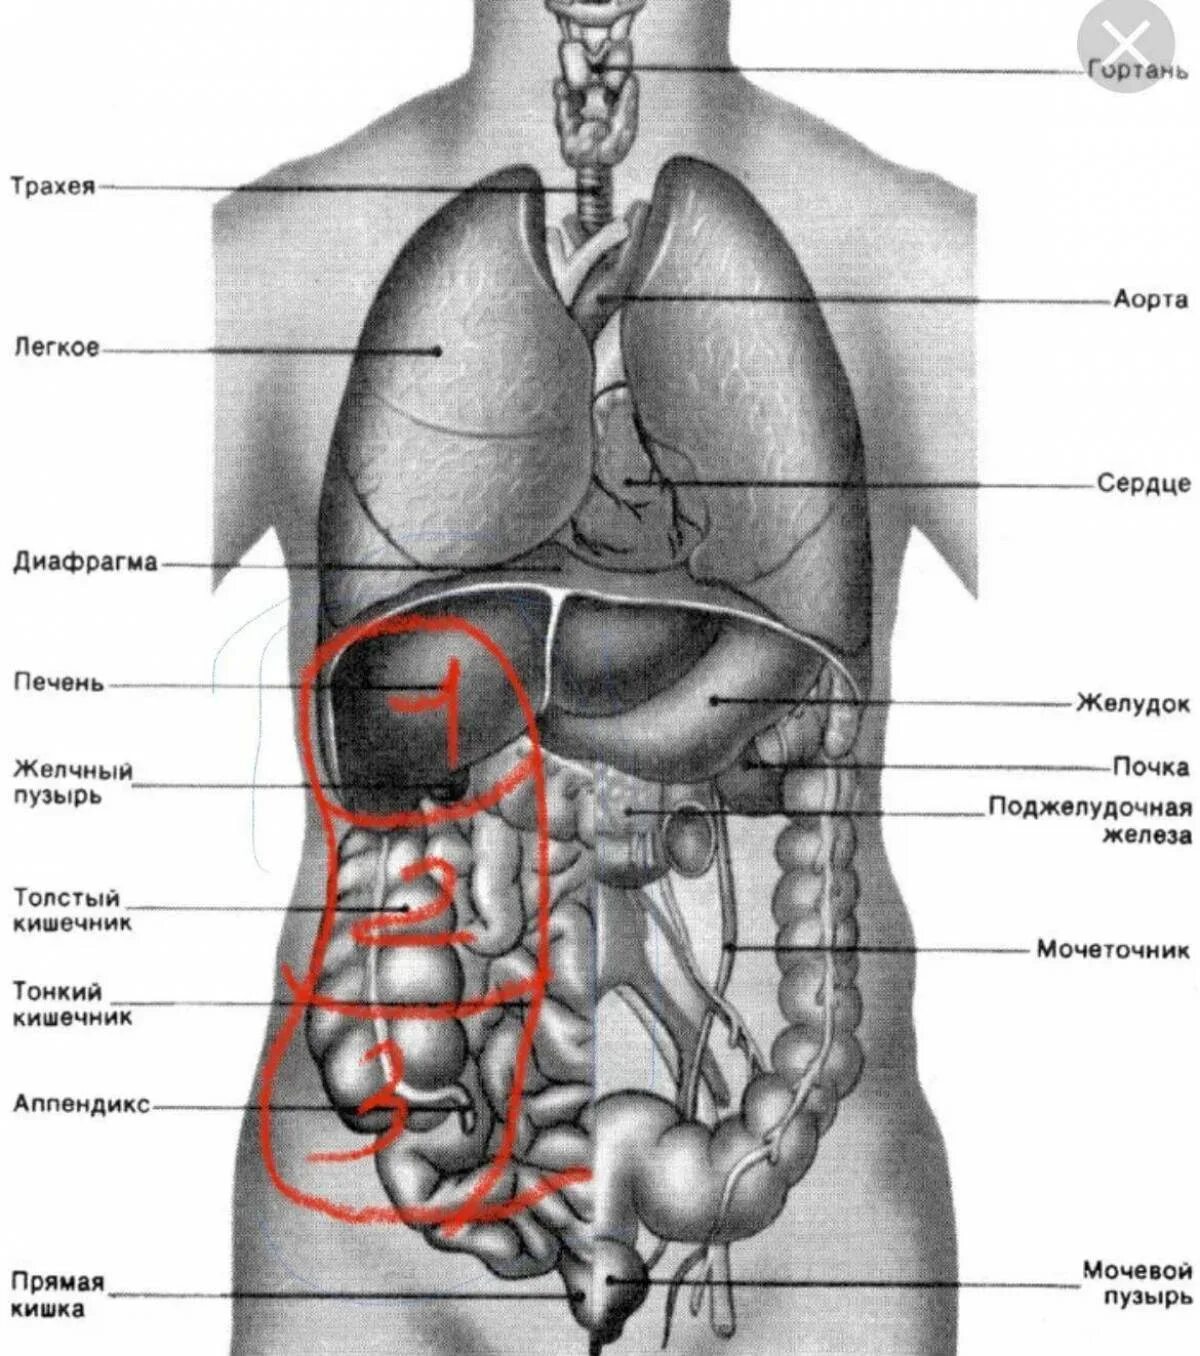 Внутренние органы строение схема. Внутренние органы человека схема расположения. Расположение органов у человека сбоку. Строение внутренних органов человека слева спереди. Внутренности человека анатомия расположение.